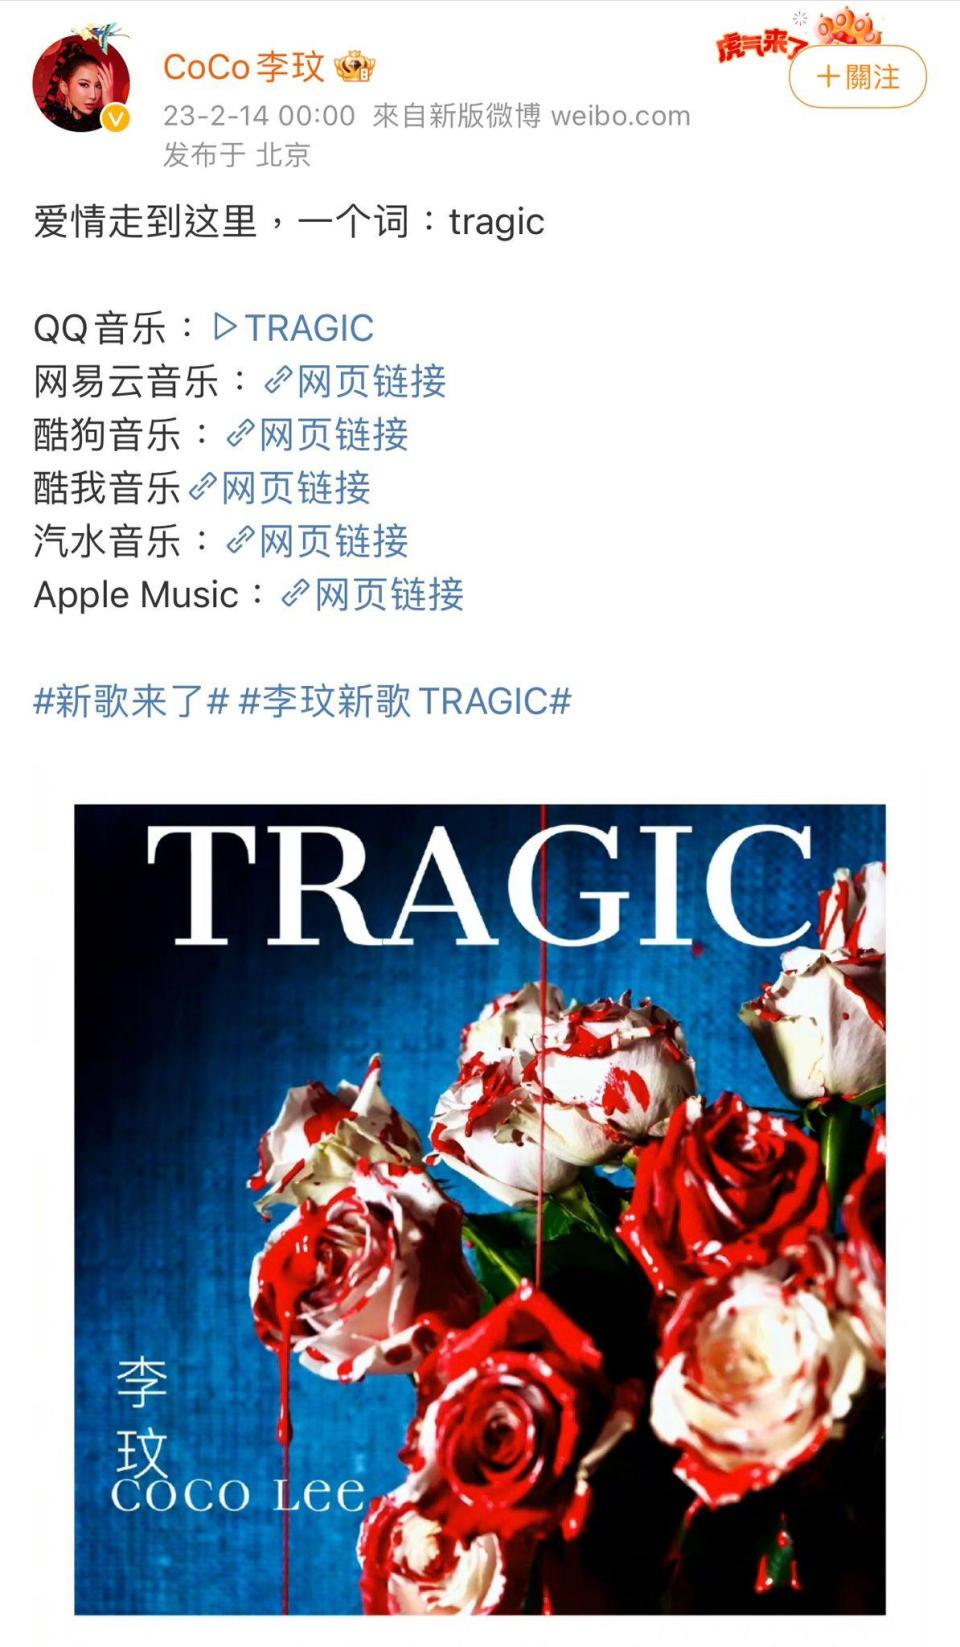 李玟推出新歌《Tragic》，更被指憑歌曲來抒發離婚心情。